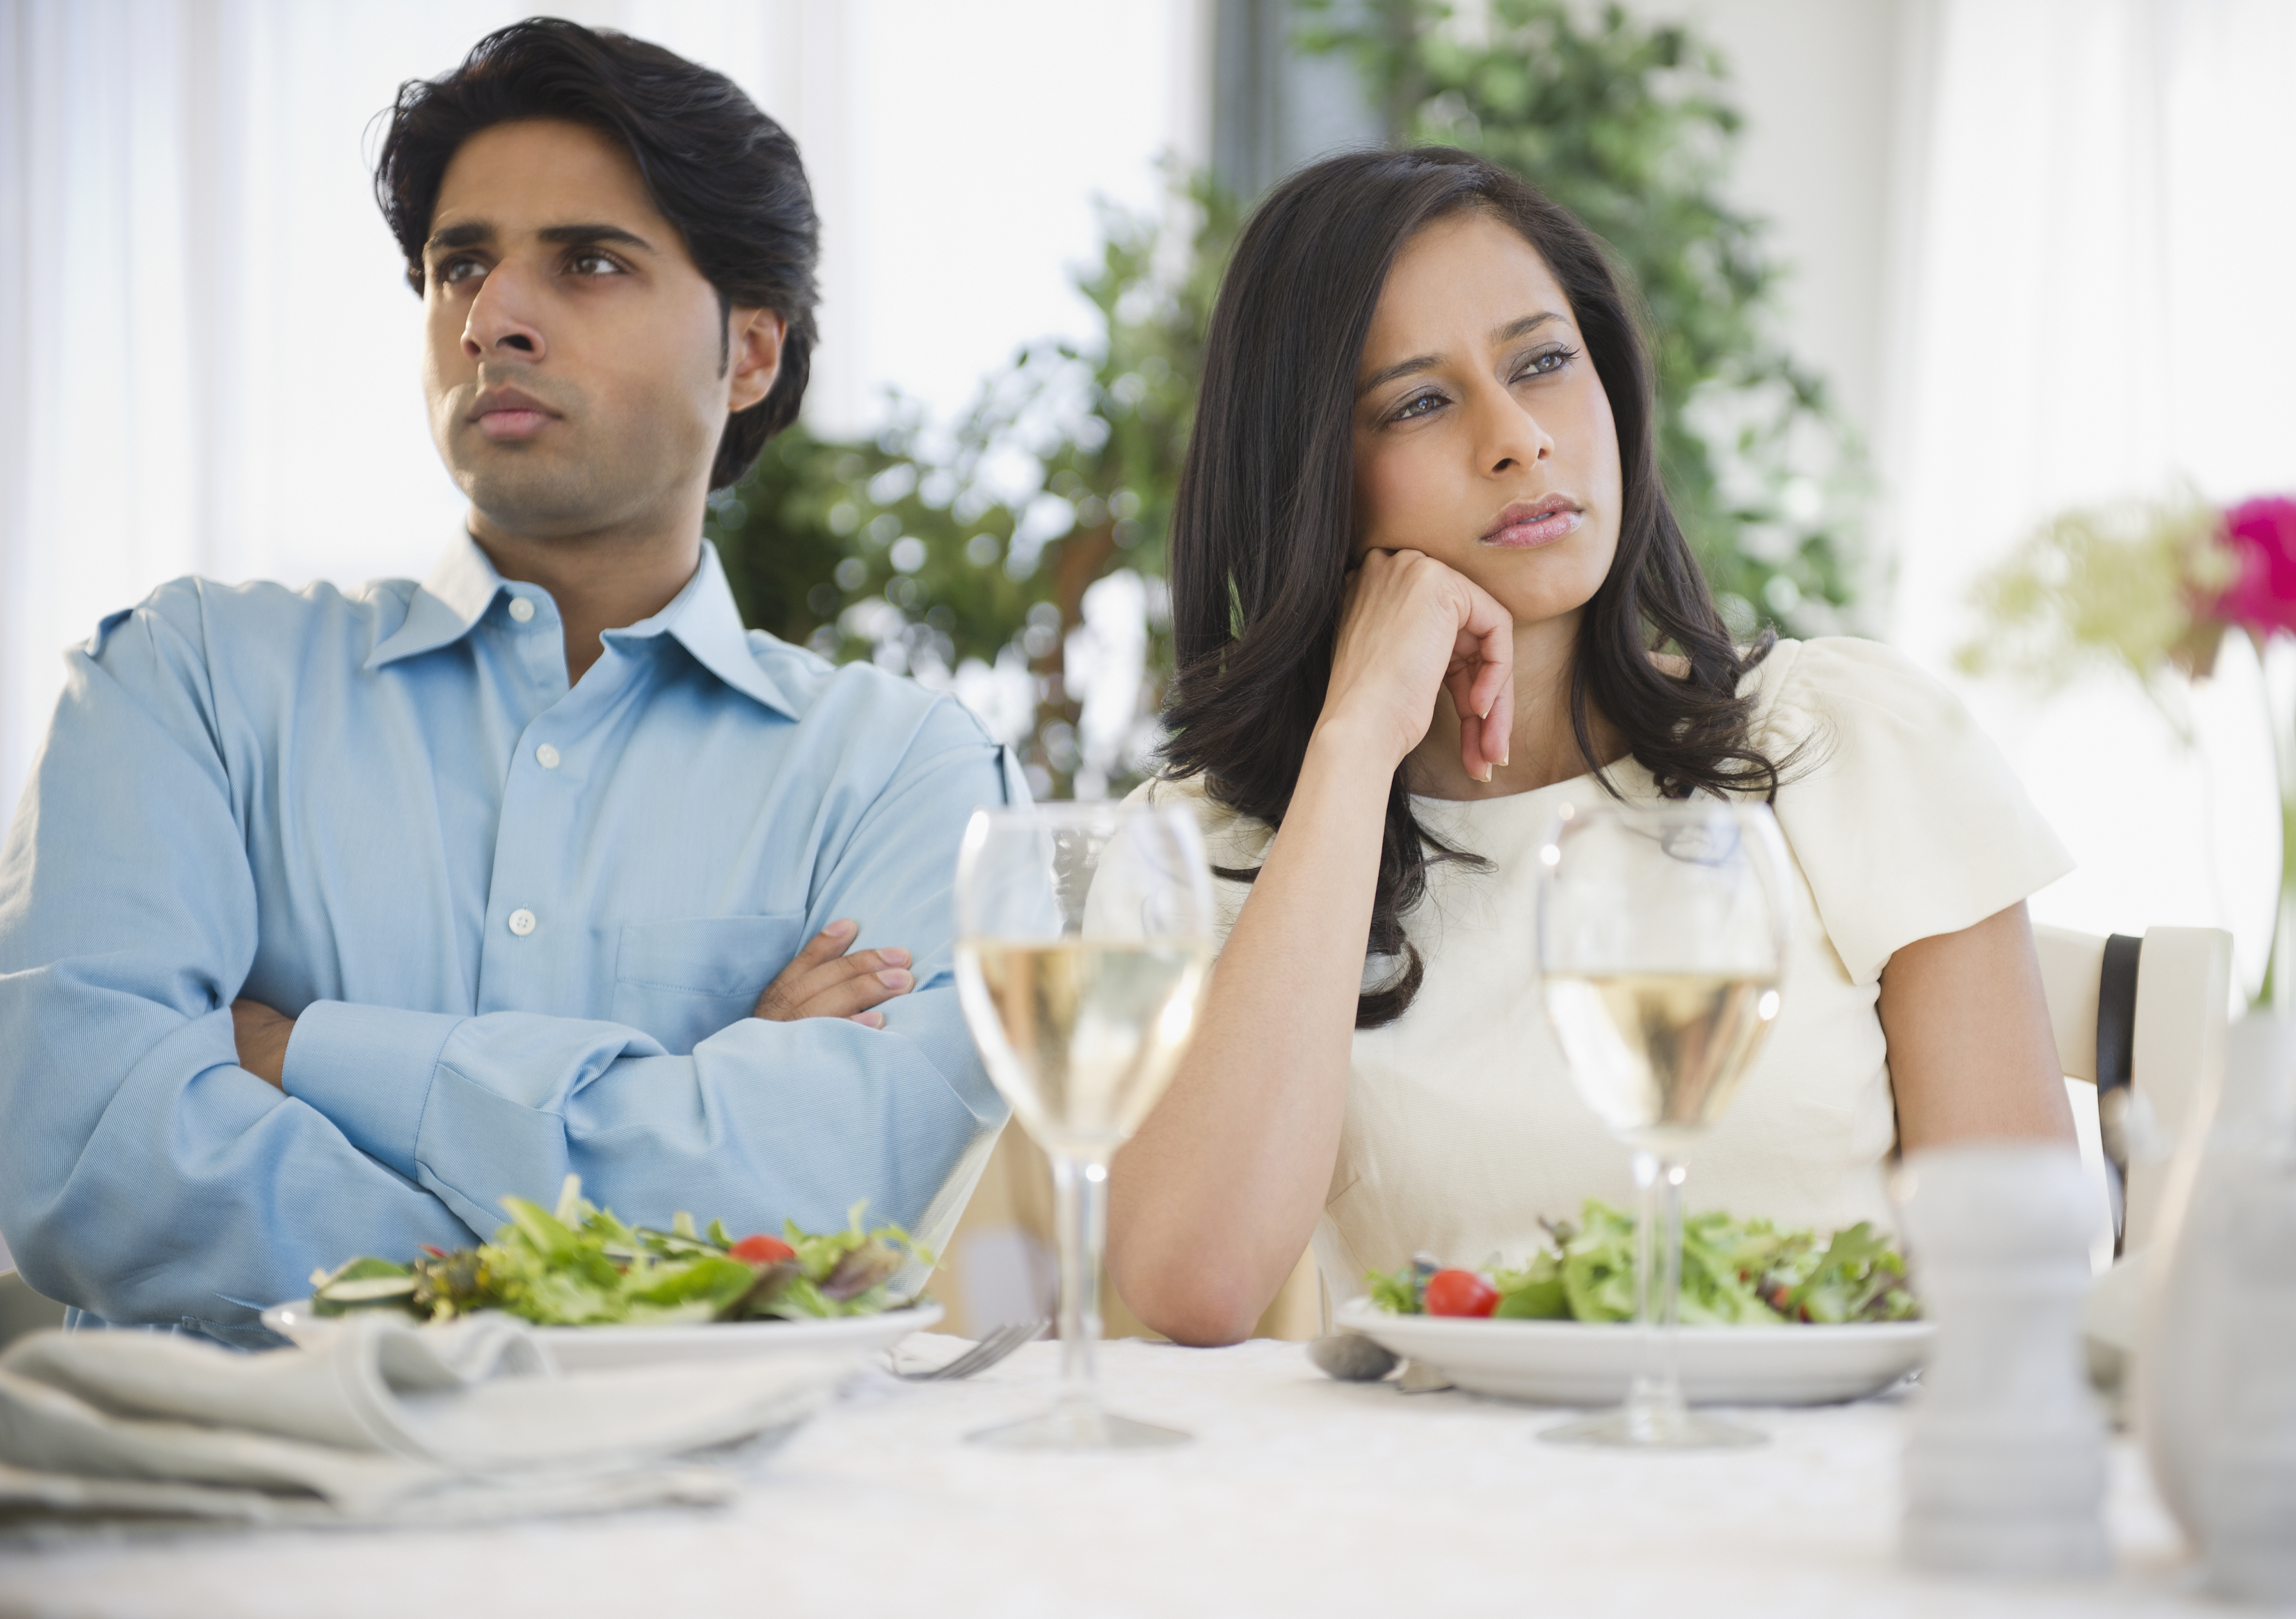 Ein Mann und eine Frau sprechen nicht miteinander, während sie an einem Tisch sitzen | Quelle: Getty Images